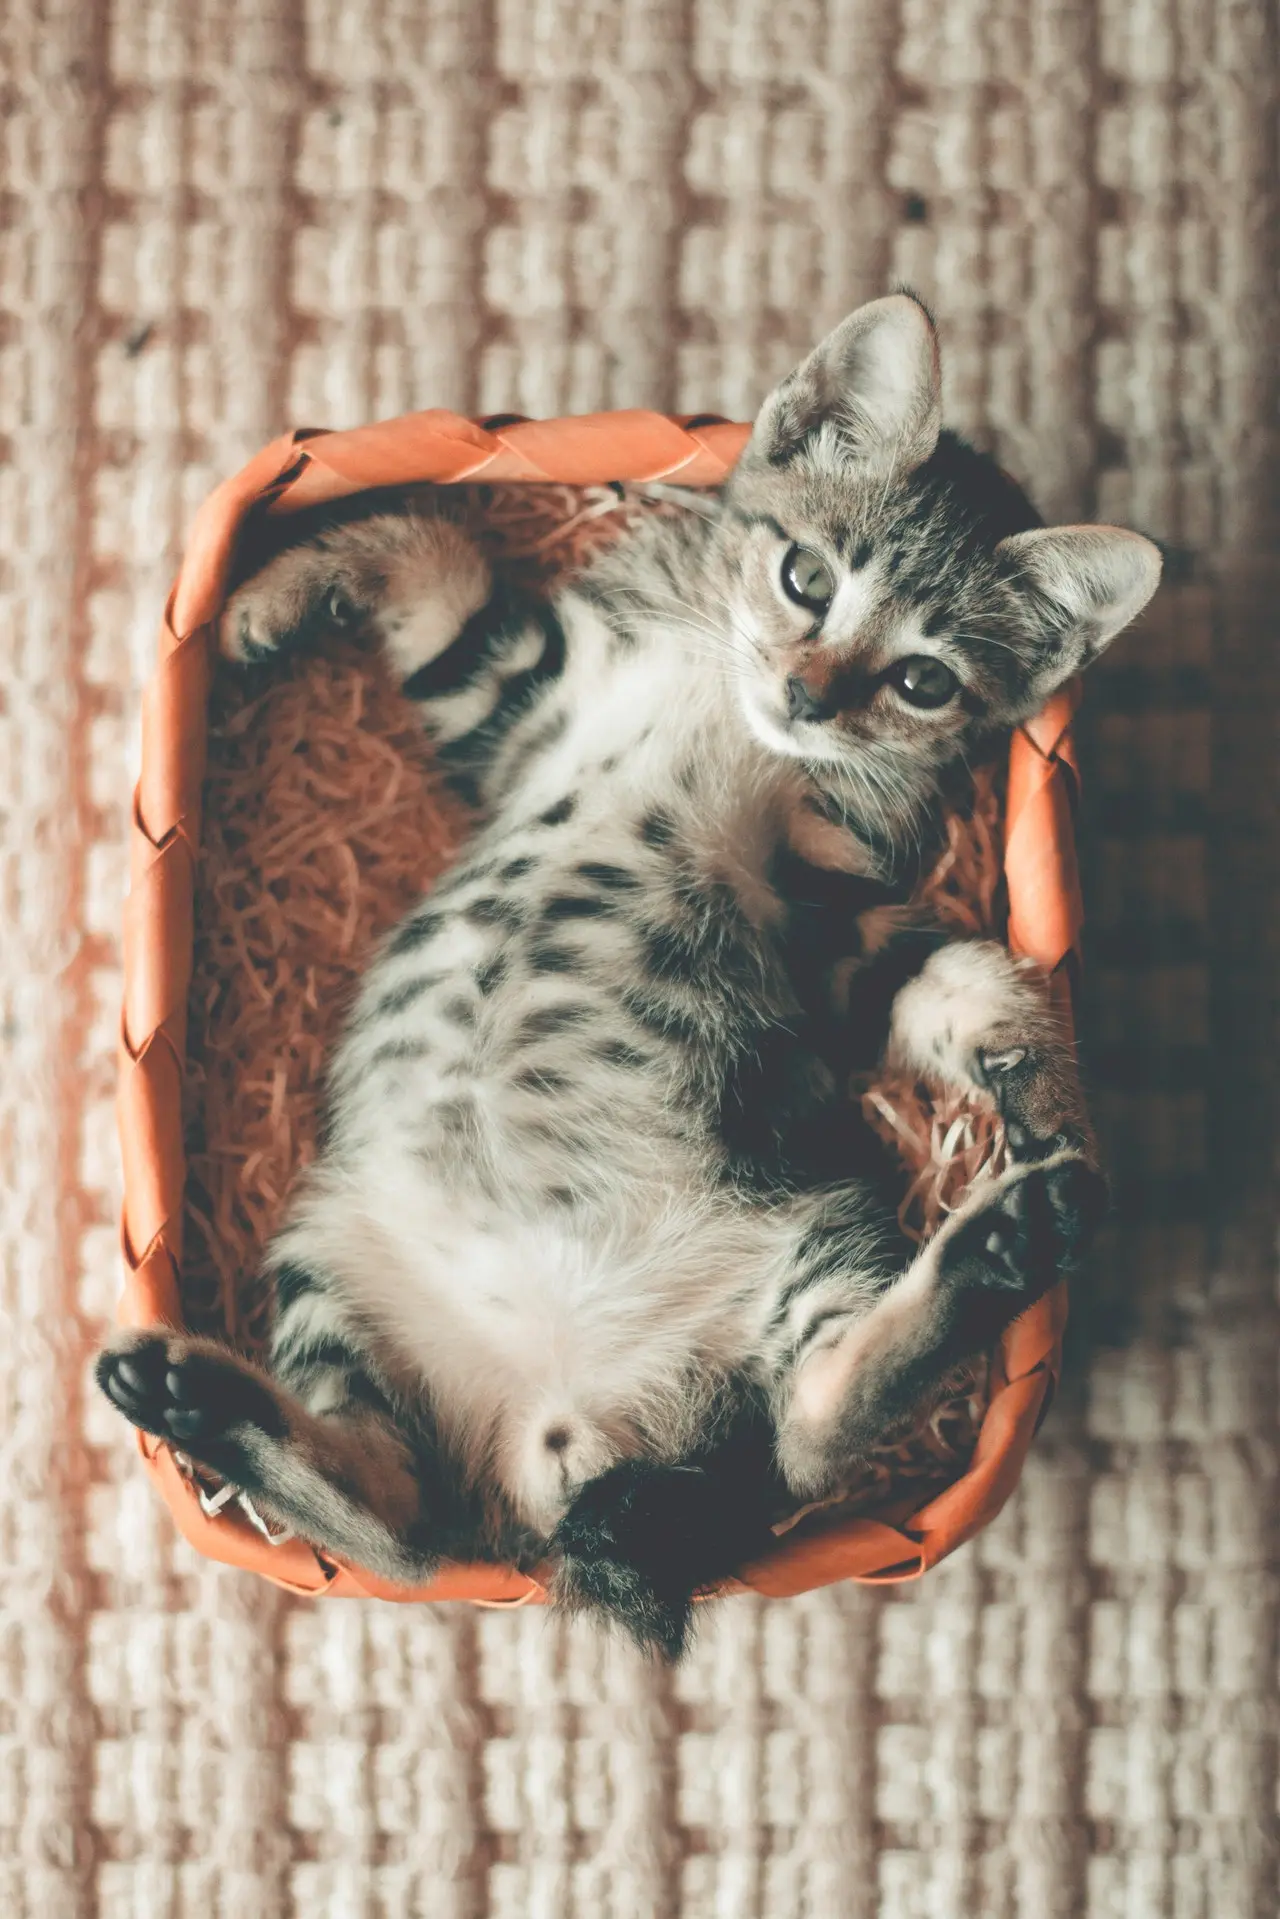 growing kitten in a basket